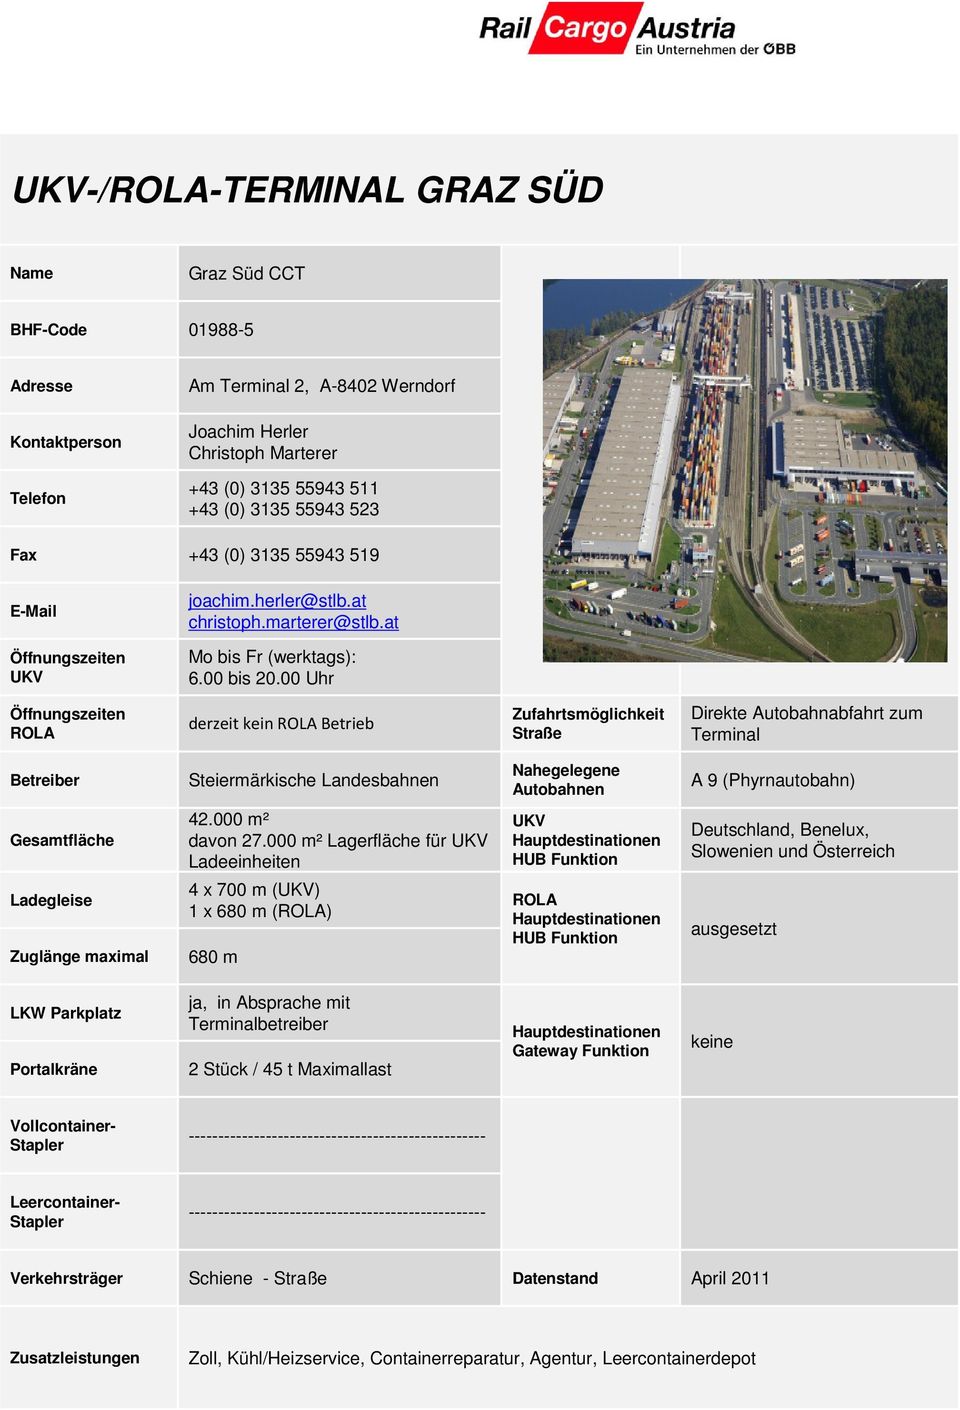 00 Uhr derzeit kein Betrieb Direkte Autobahnabfahrt zum Terminal Steiermärkische Landesbahnen A 9 (Phyrnautobahn) Gesamtfläche 42.000 m² davon 27.